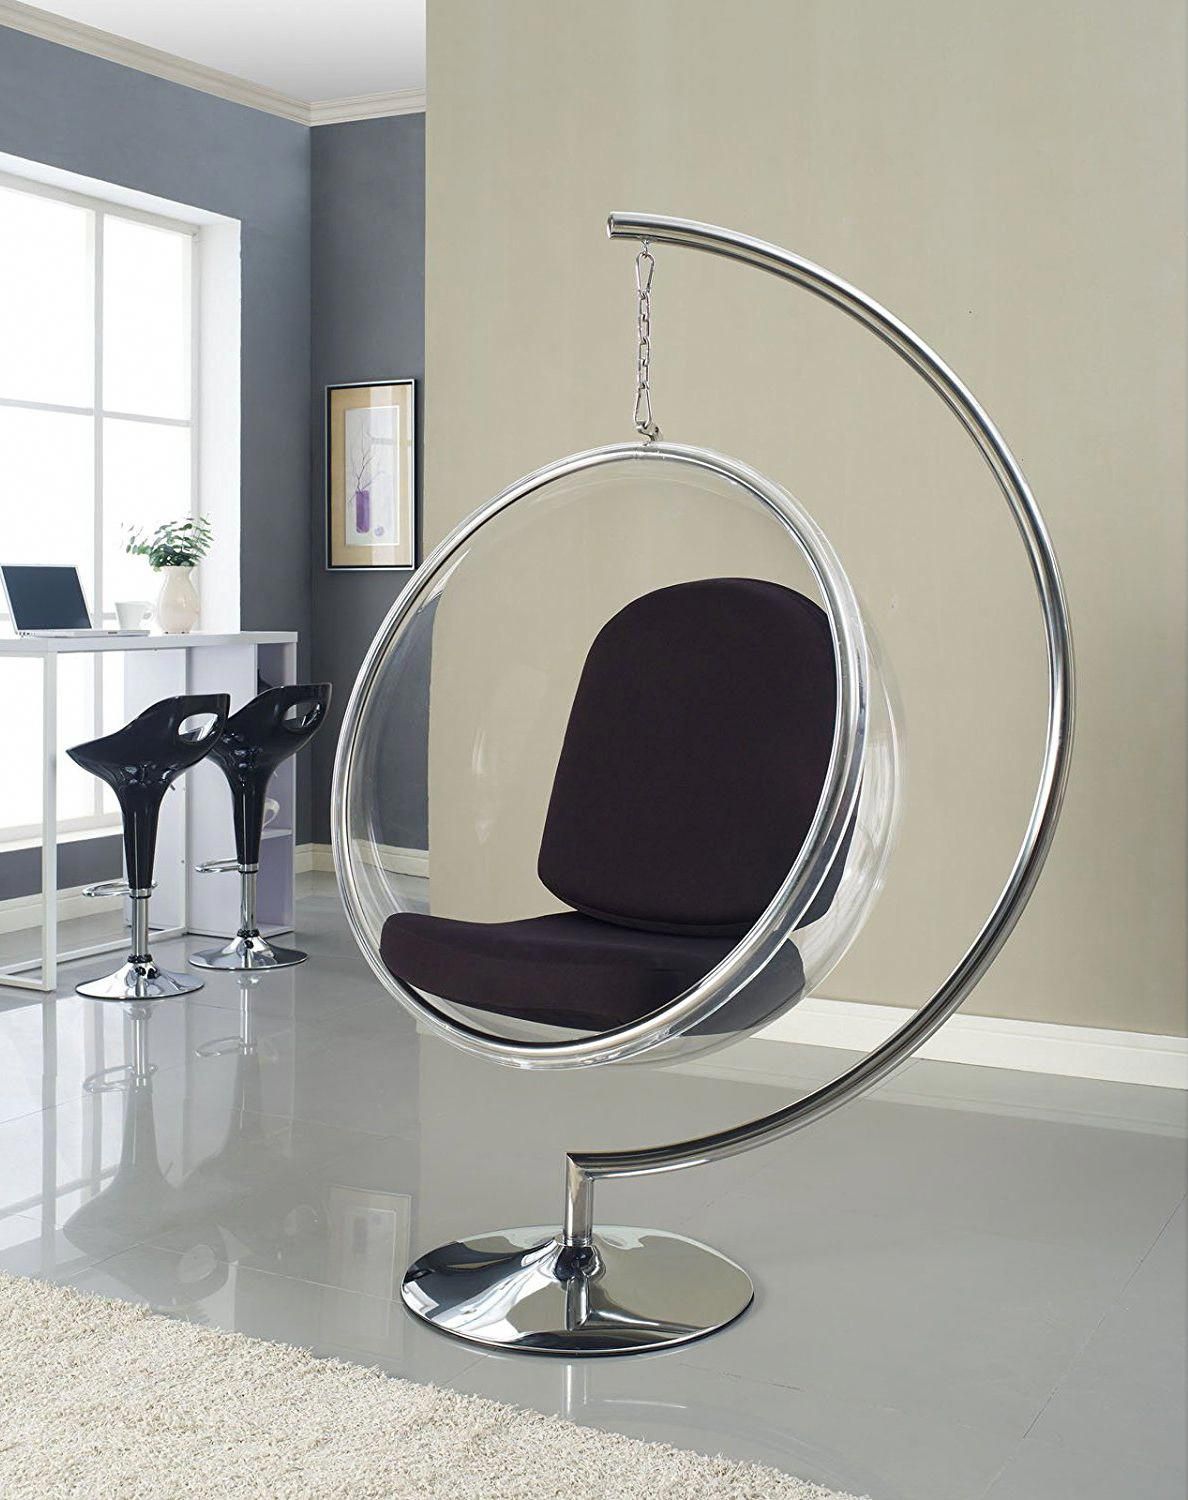 Mobilier Pas Cher Nouveau Bubble Chair Classicchairs Retro Fice Chair